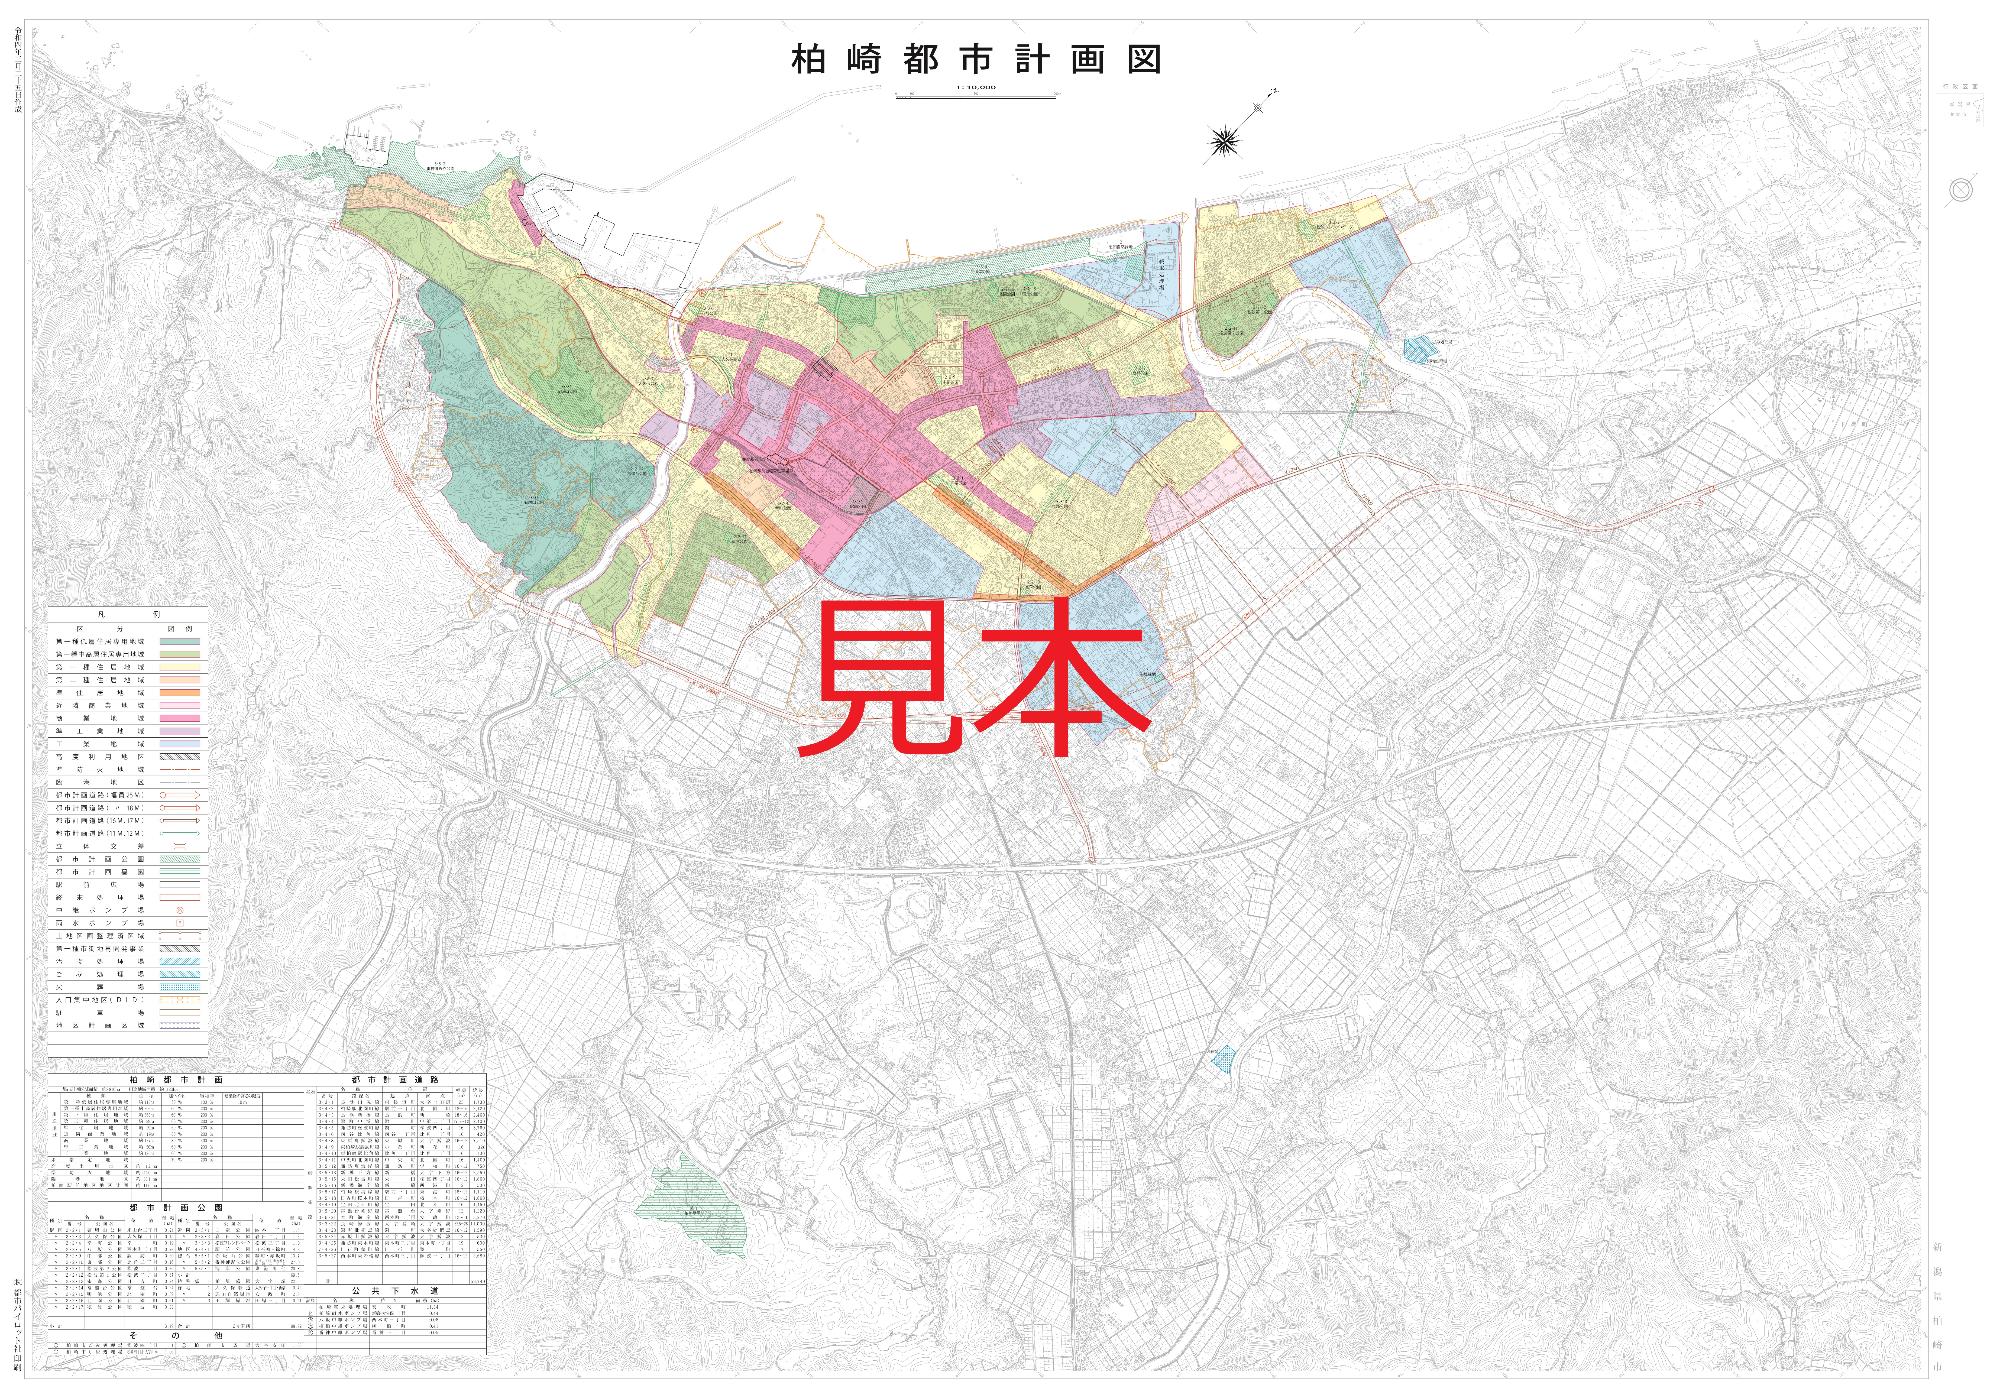 都市計画図の見本の写真